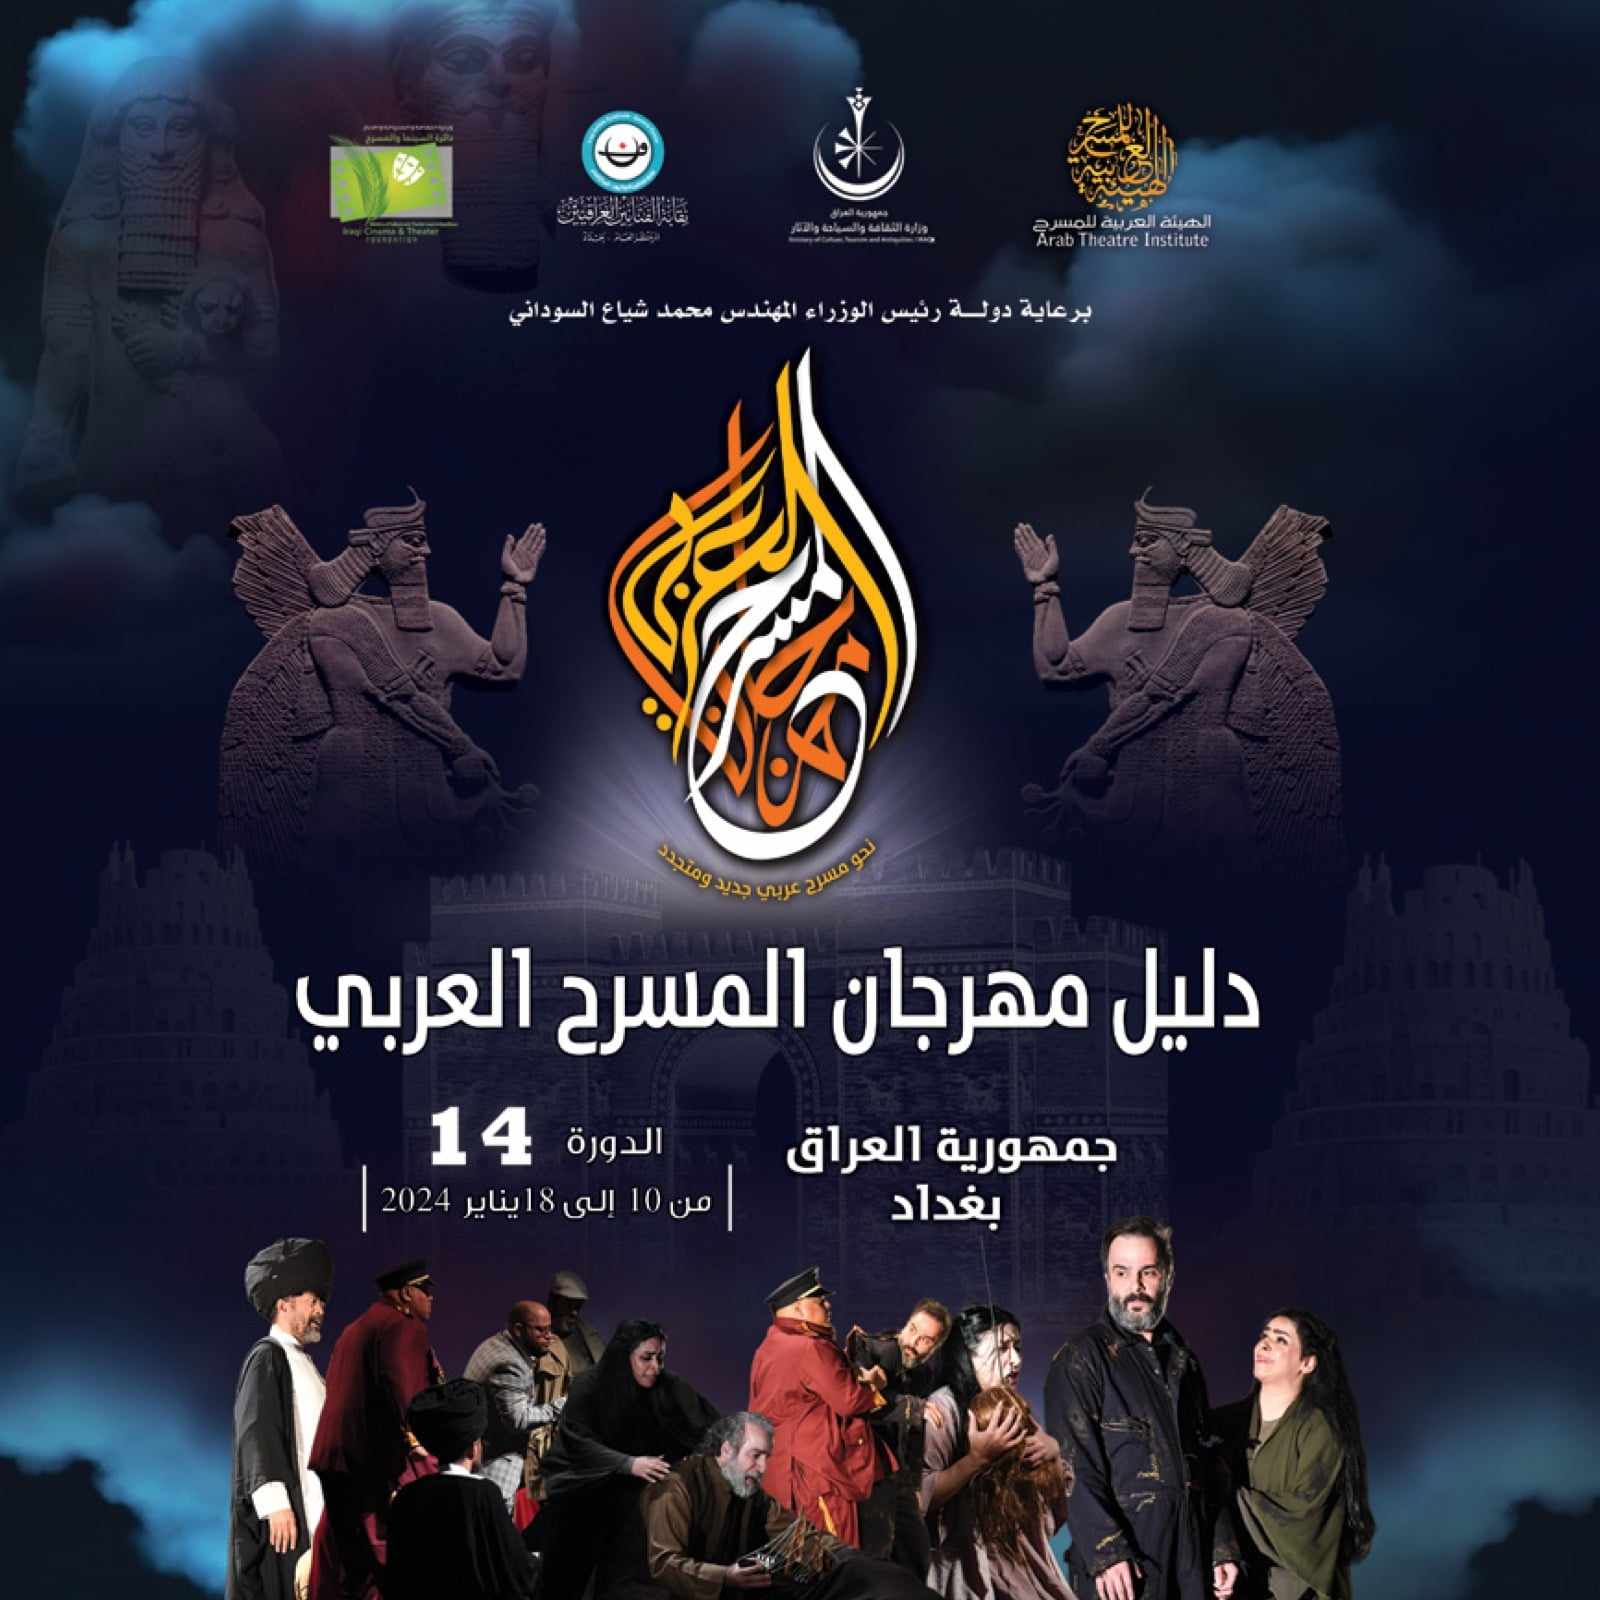 دورة تاريخية لمهرجان المسرح العربي في العاصمة العراقية بغداد

